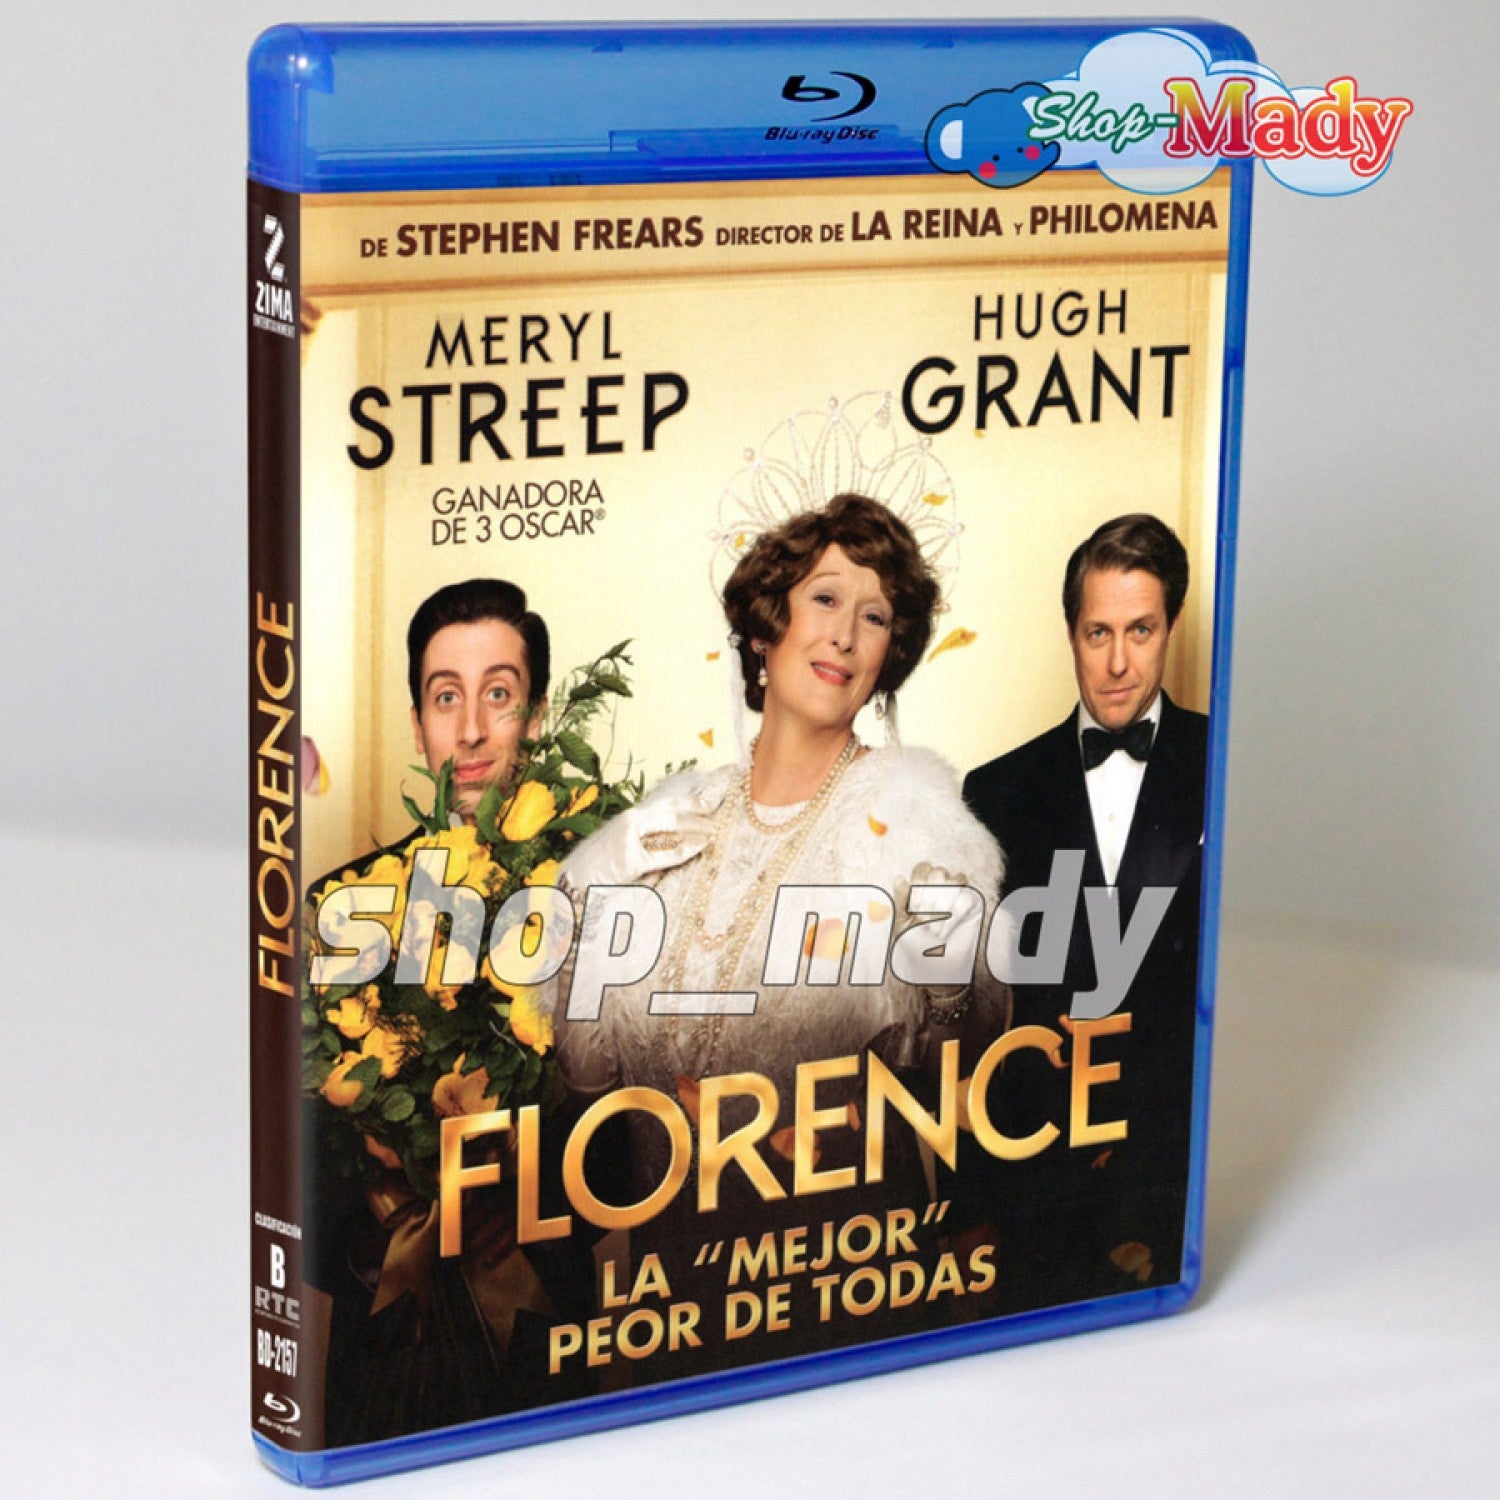 FLORENCE - La Mejor Peor de Todas Blu-ray